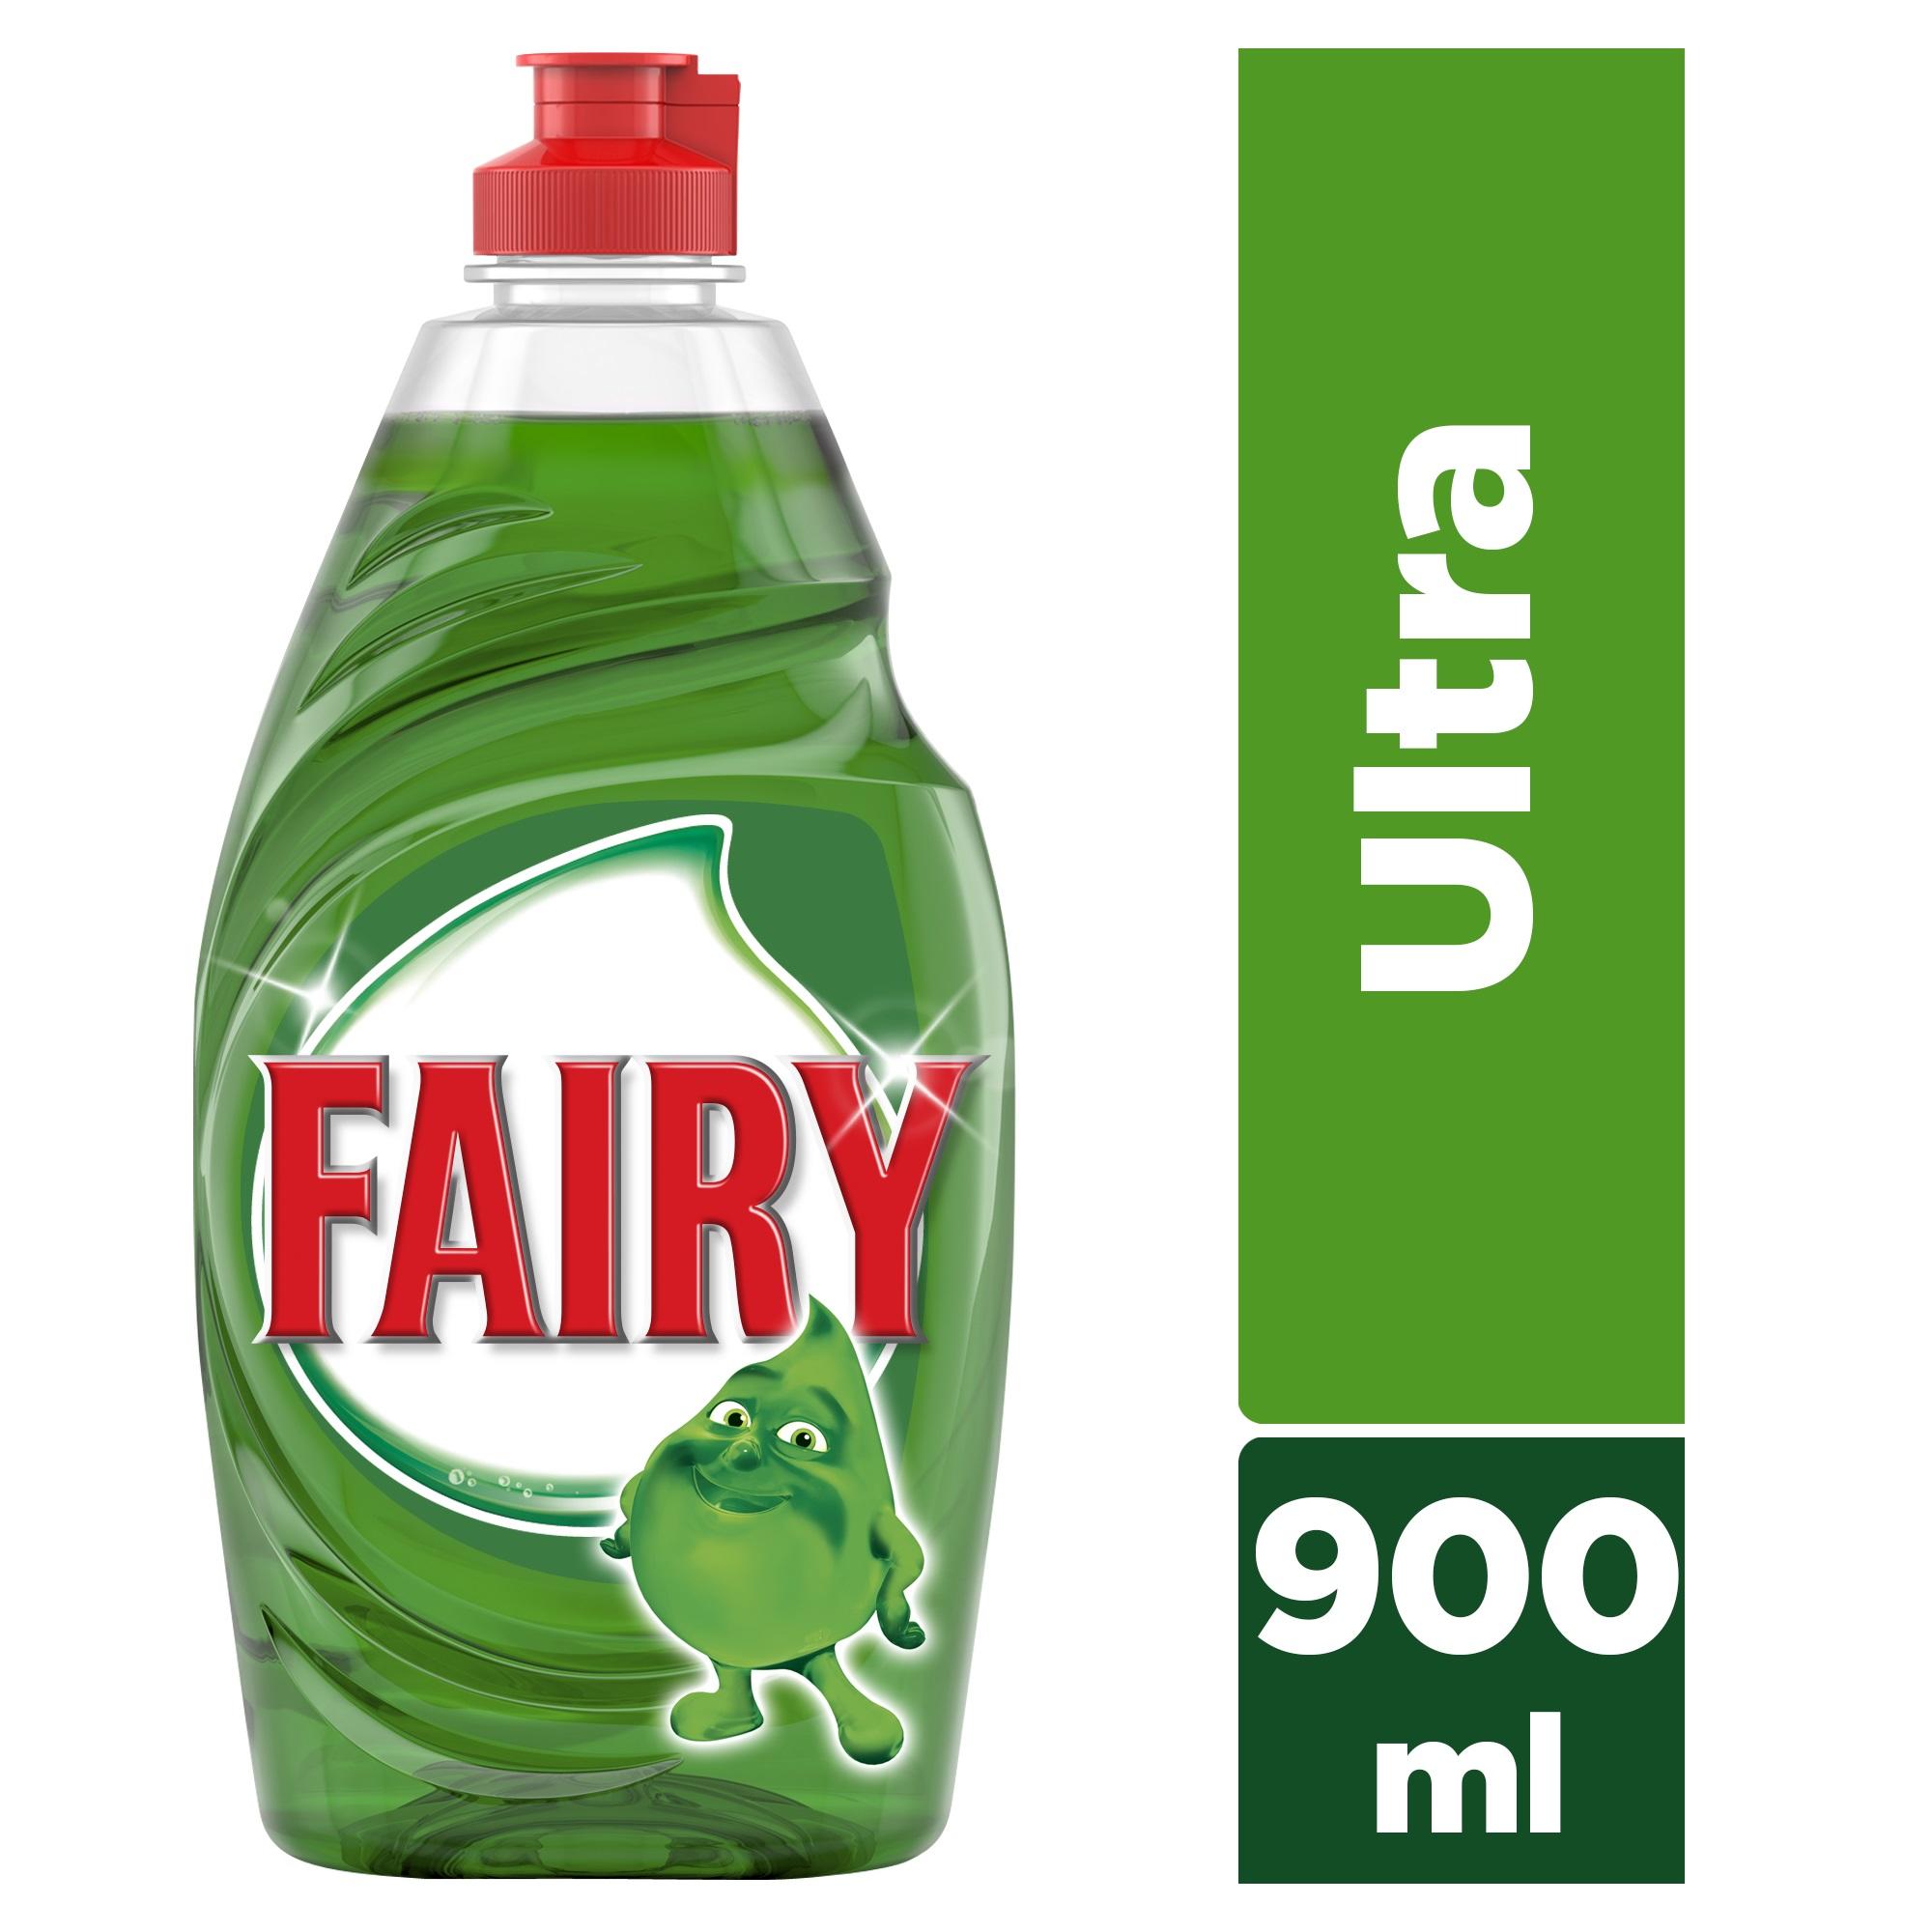 Υγρό πιάτων Ultra Original Fairy τα 2 τεμάχια -40% (2x900ml)